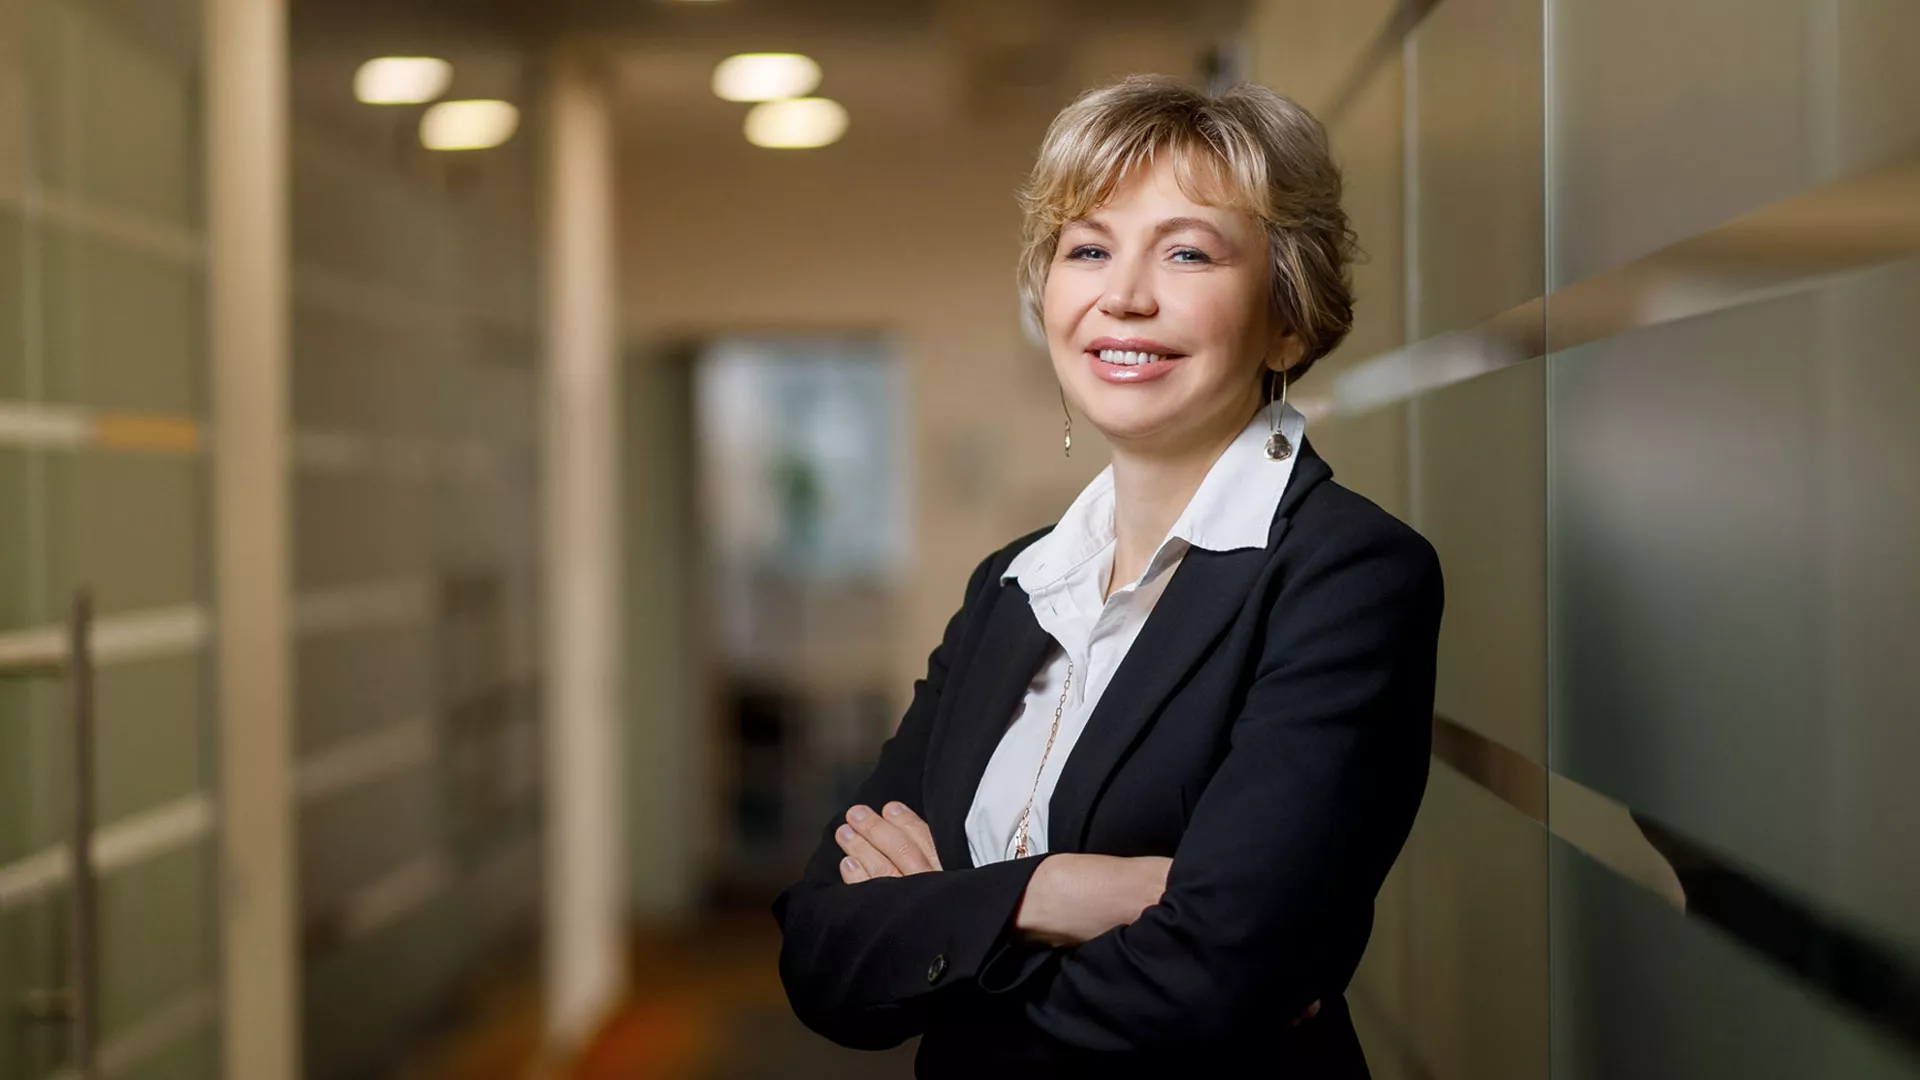 Natalia Anon CEO of Svitla Systems